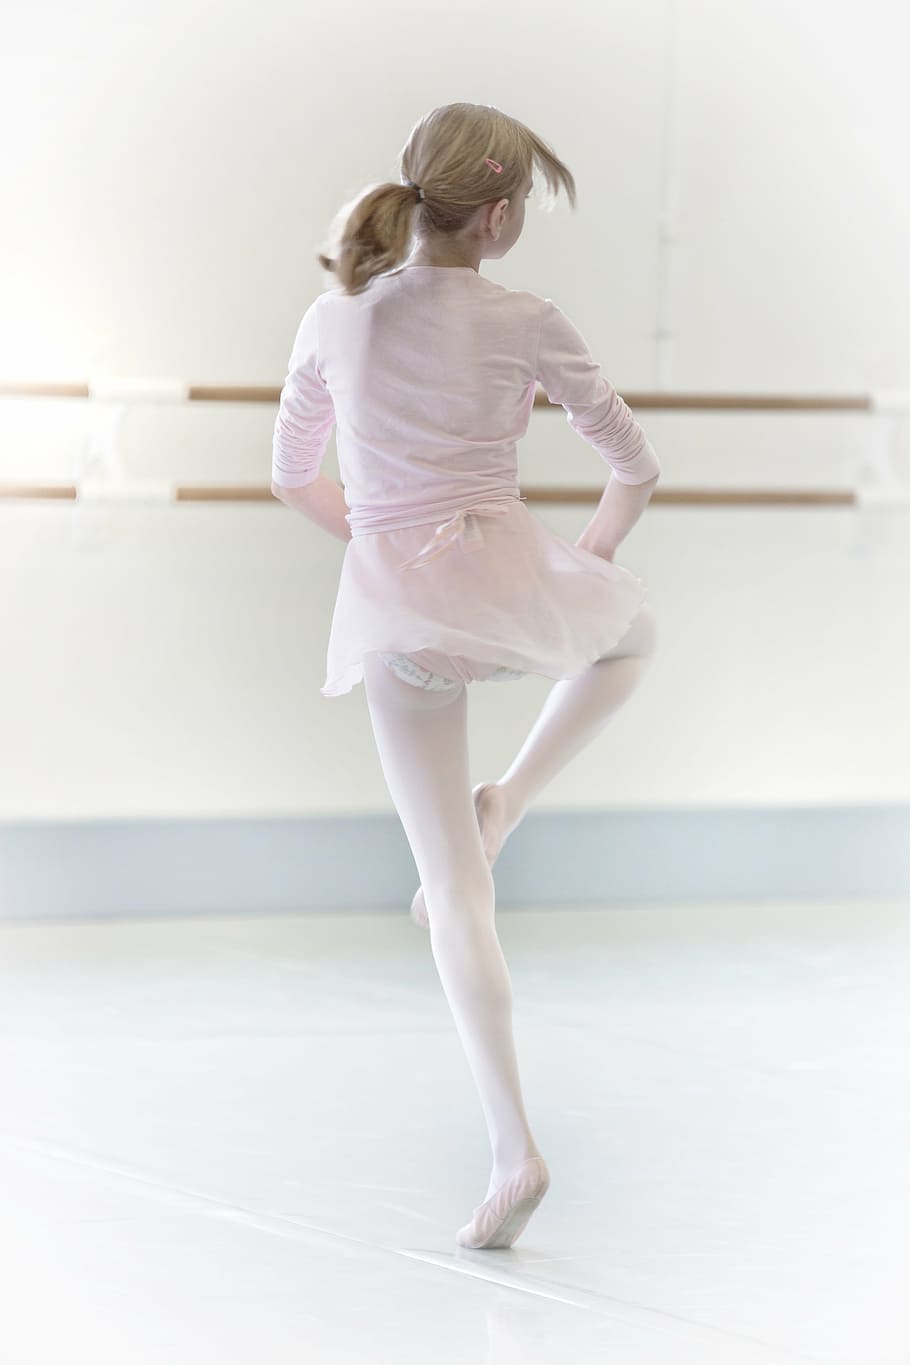 girl practicing ballerina activities, dance, dancer, high key